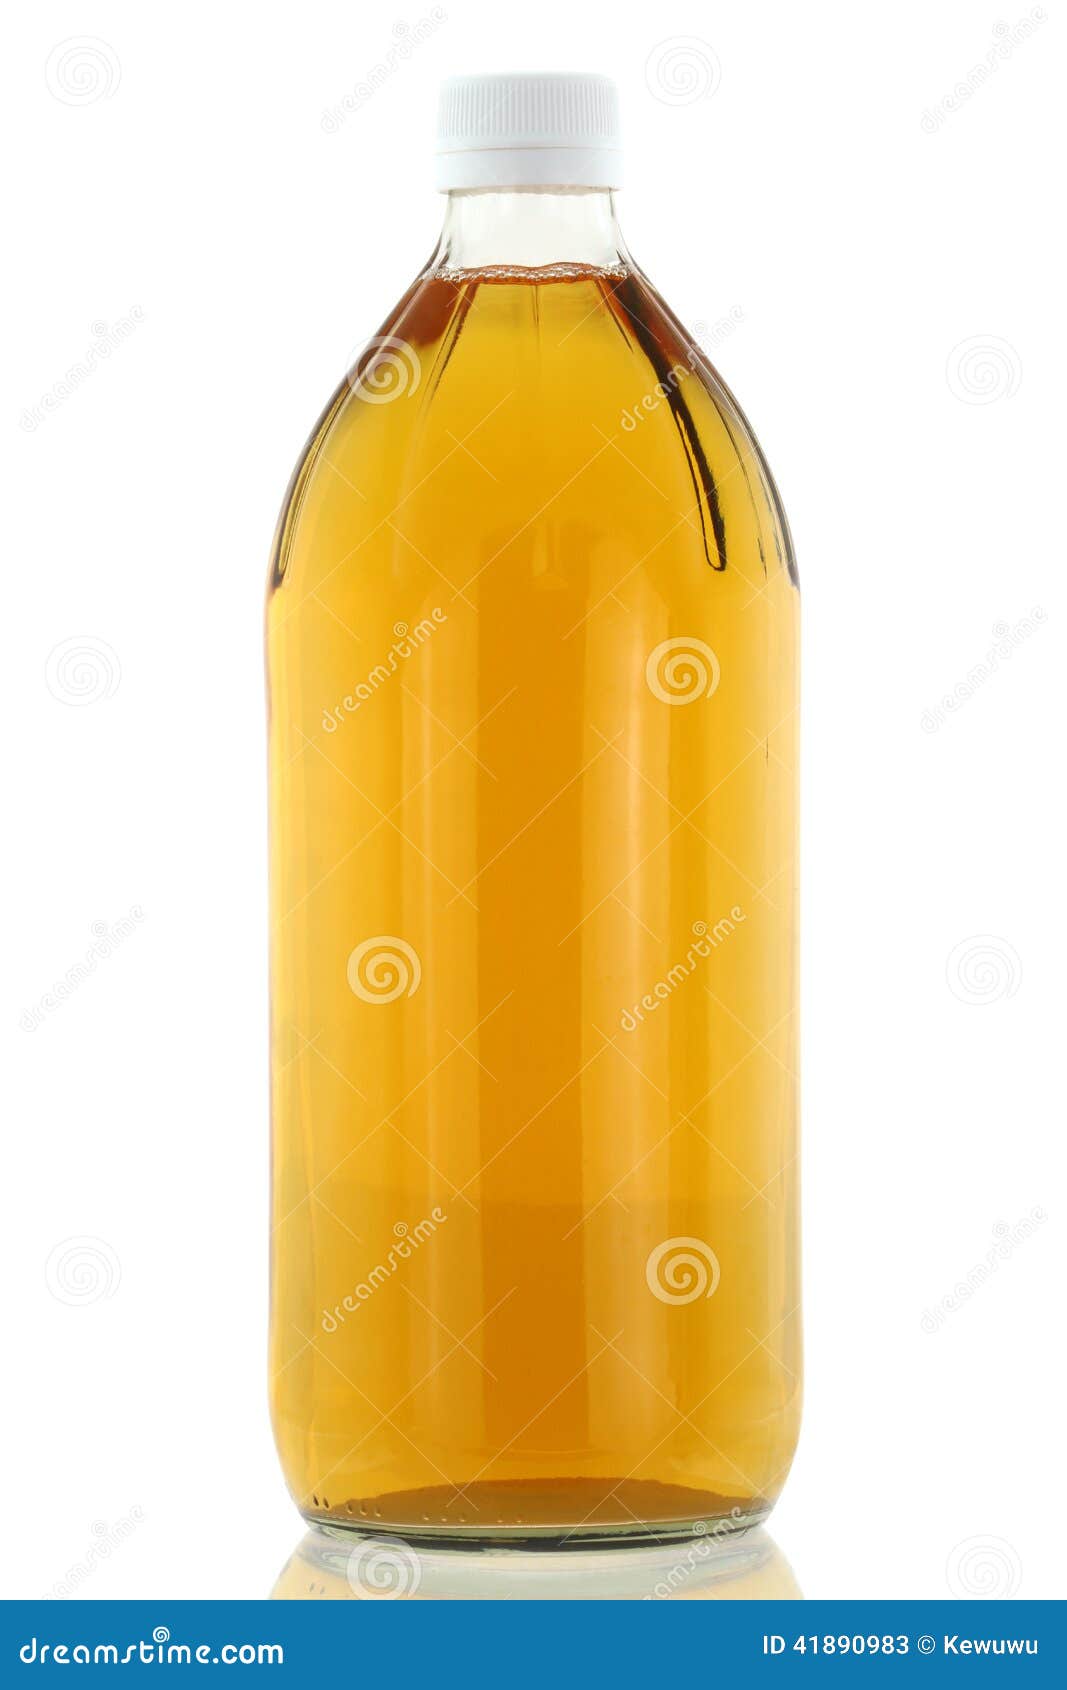 filtered apple cider vinegar